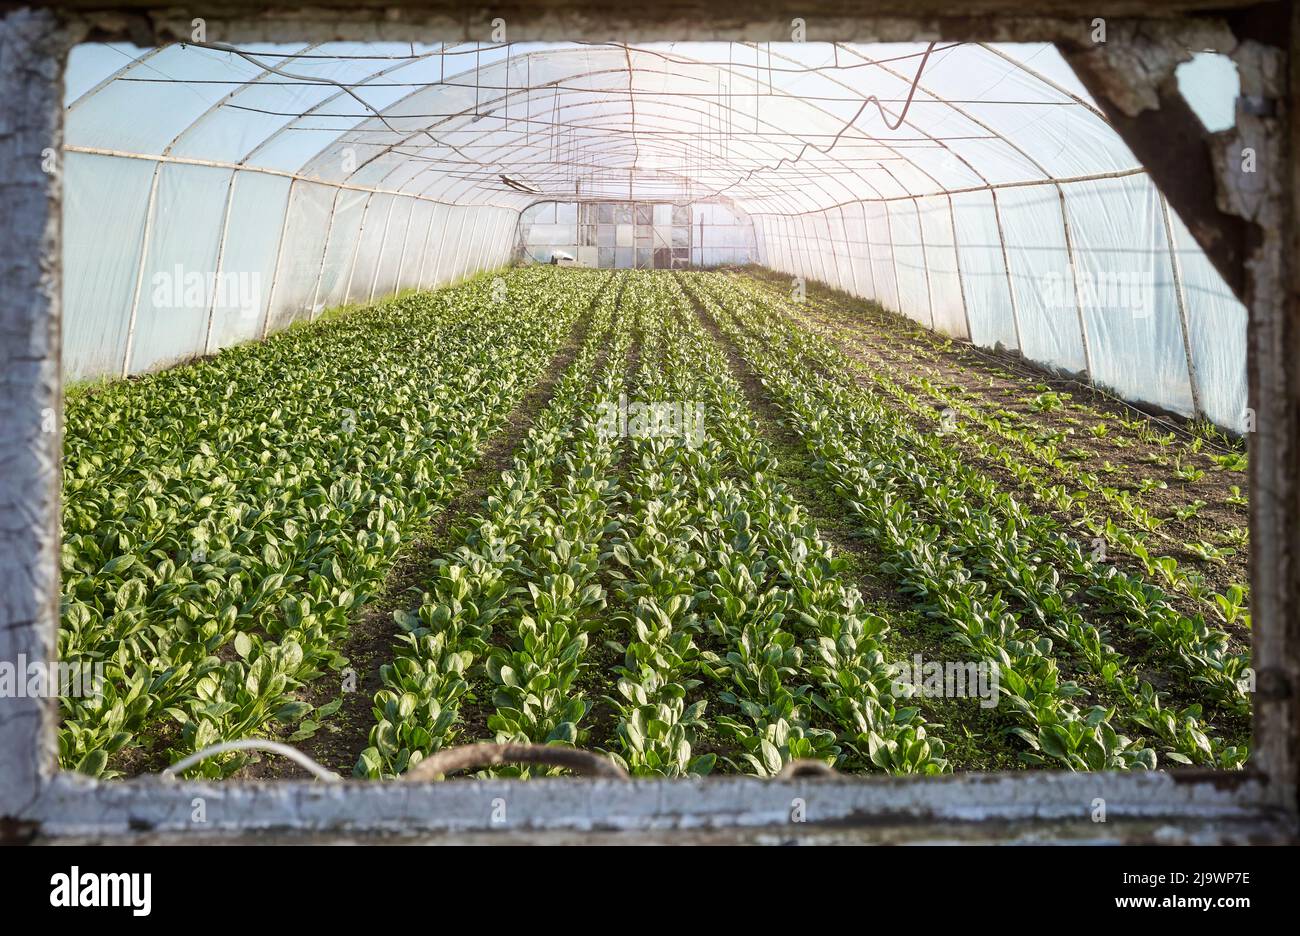 Las hileras de verduras orgánicas se ven a través de una ventana, plantando en un invernadero. Foto de stock